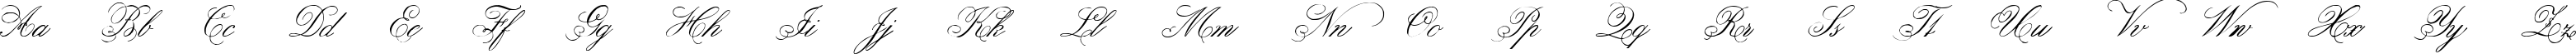 Пример написания английского алфавита шрифтом Belphebe